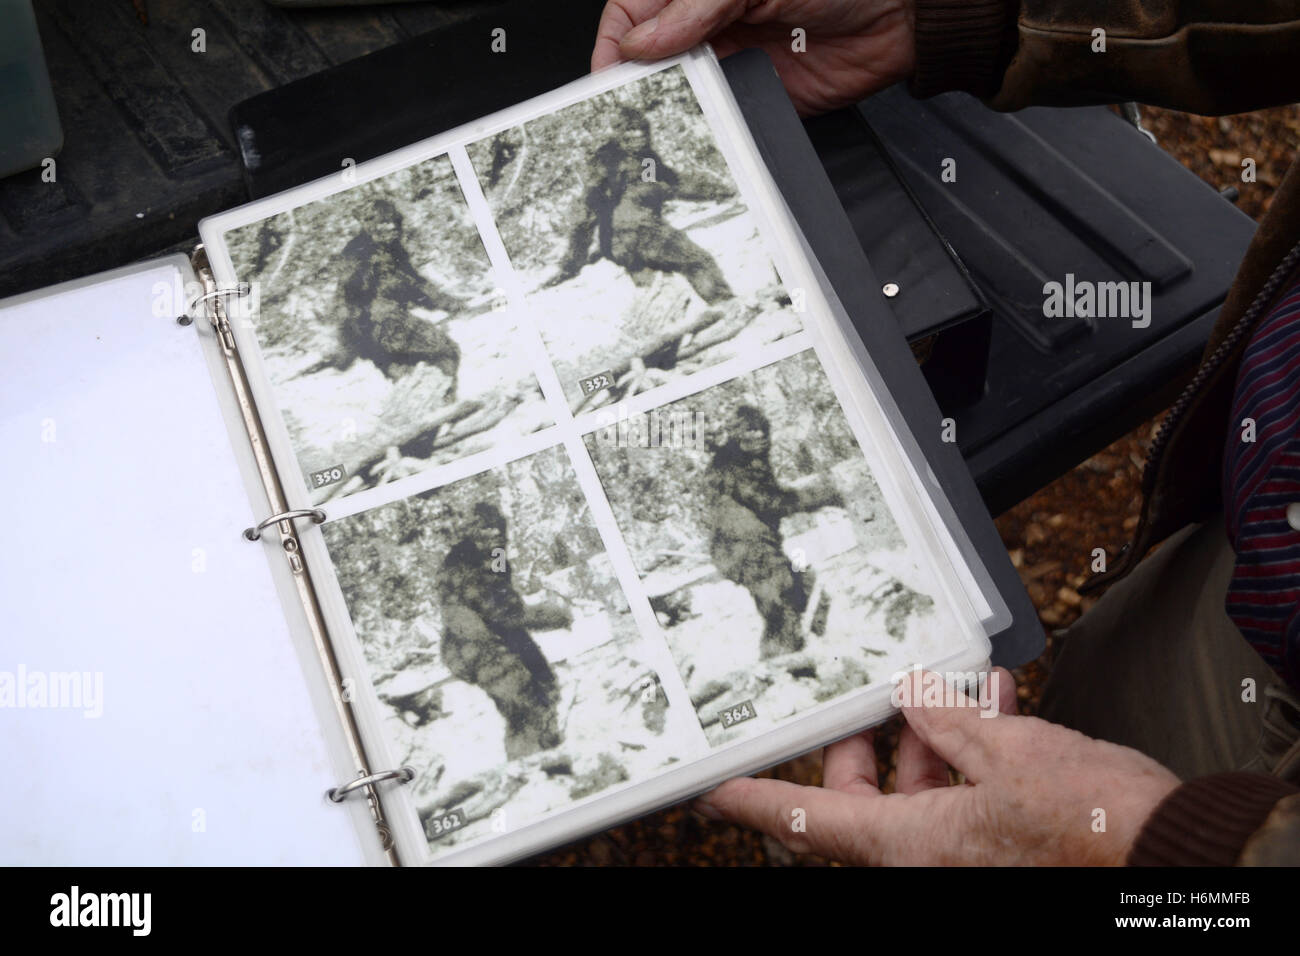 Un Sasquatch hunter avec des images fixes de la célèbre 1967 Patterson-Gimlin film Bigfoot, British Columbia, Canada. Banque D'Images